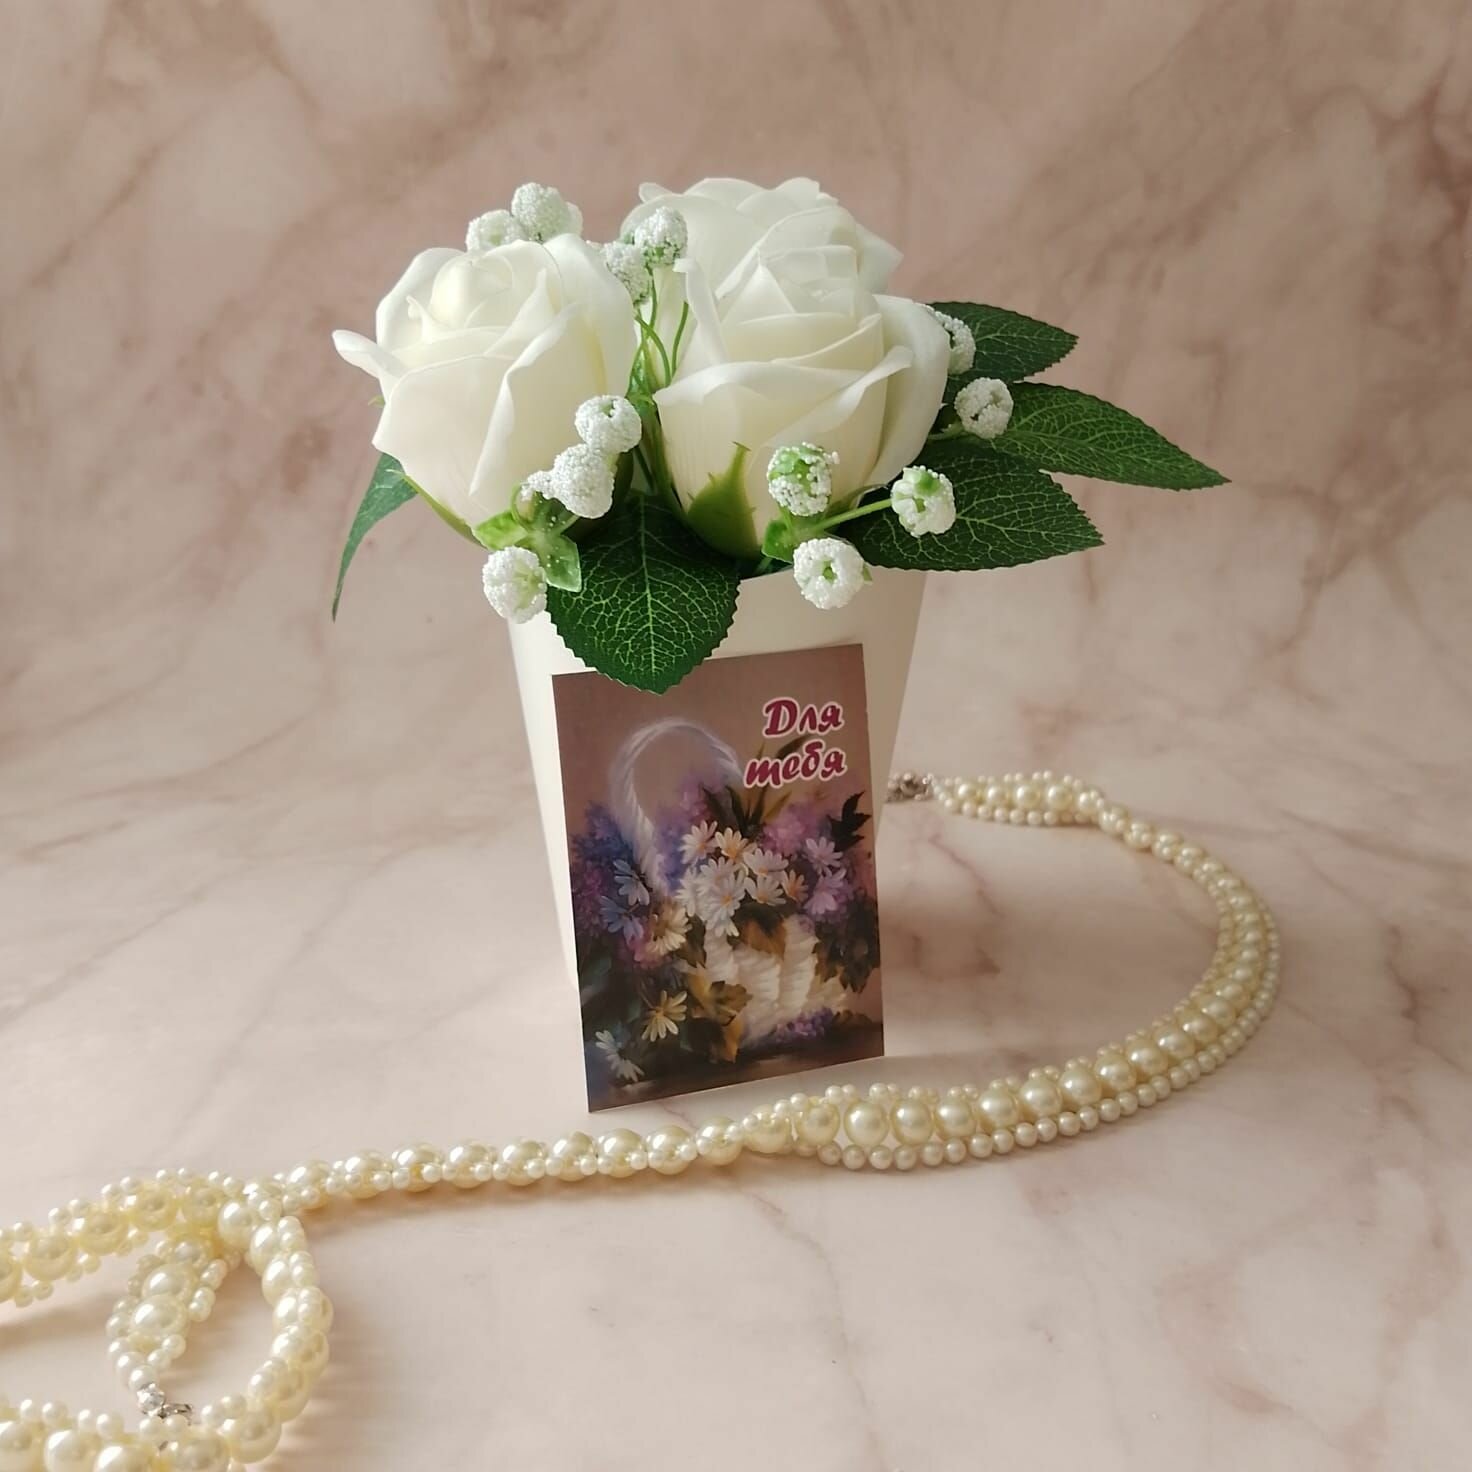 Подарочный стаканчик с мыльными белыми розами "Для тебя", подарок женщине, любимой